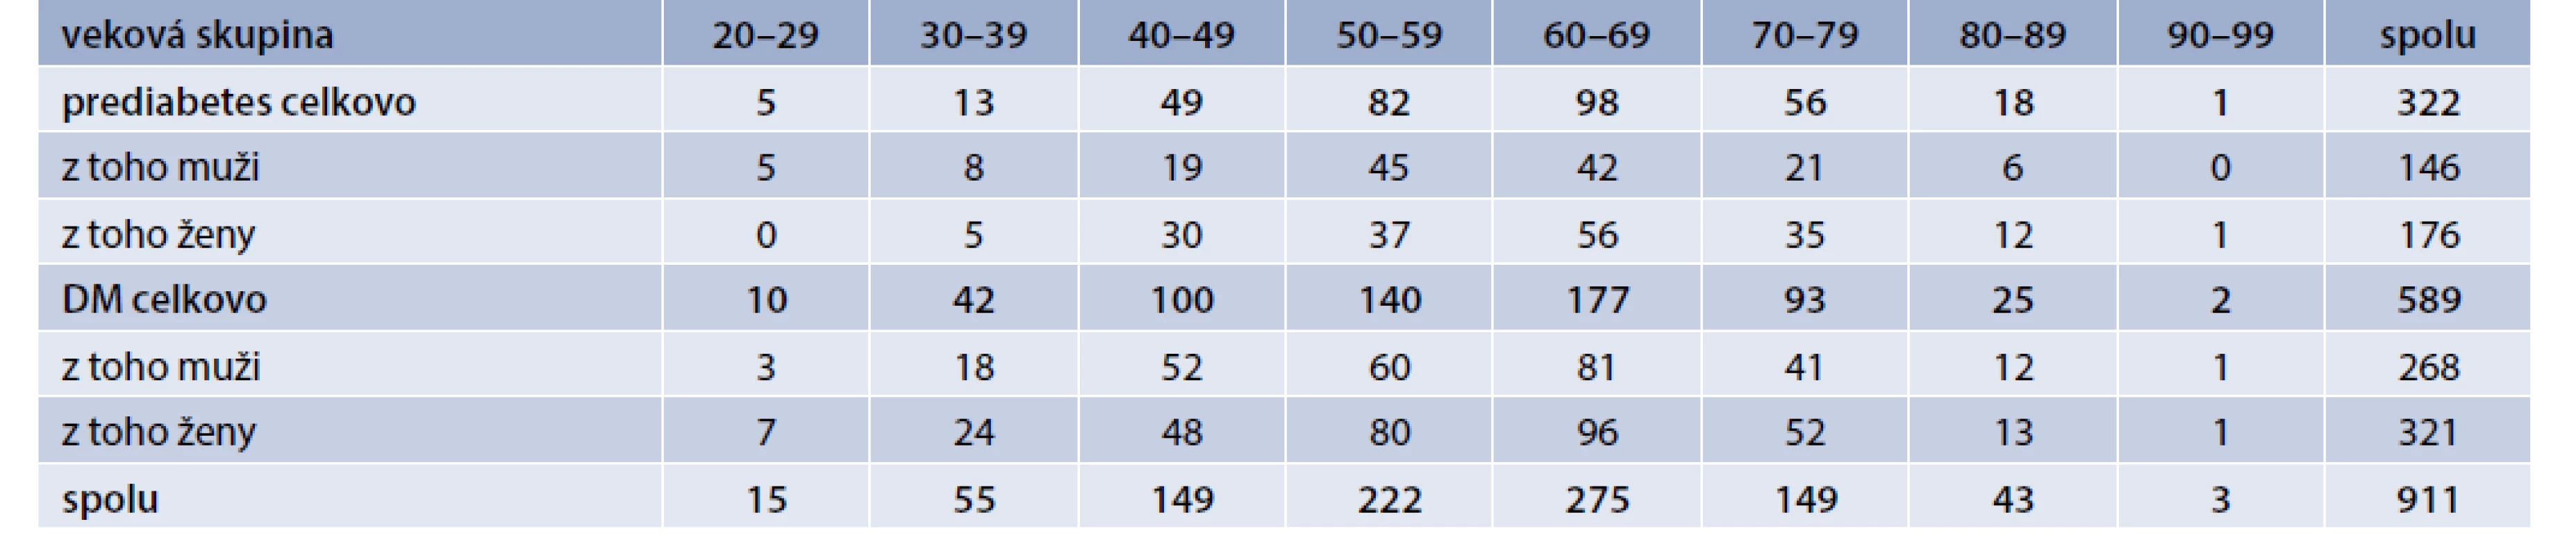 Počet zachytených prediabetikov a diabetikov na základe veku a pohlavia. Vlastné údaje autorov